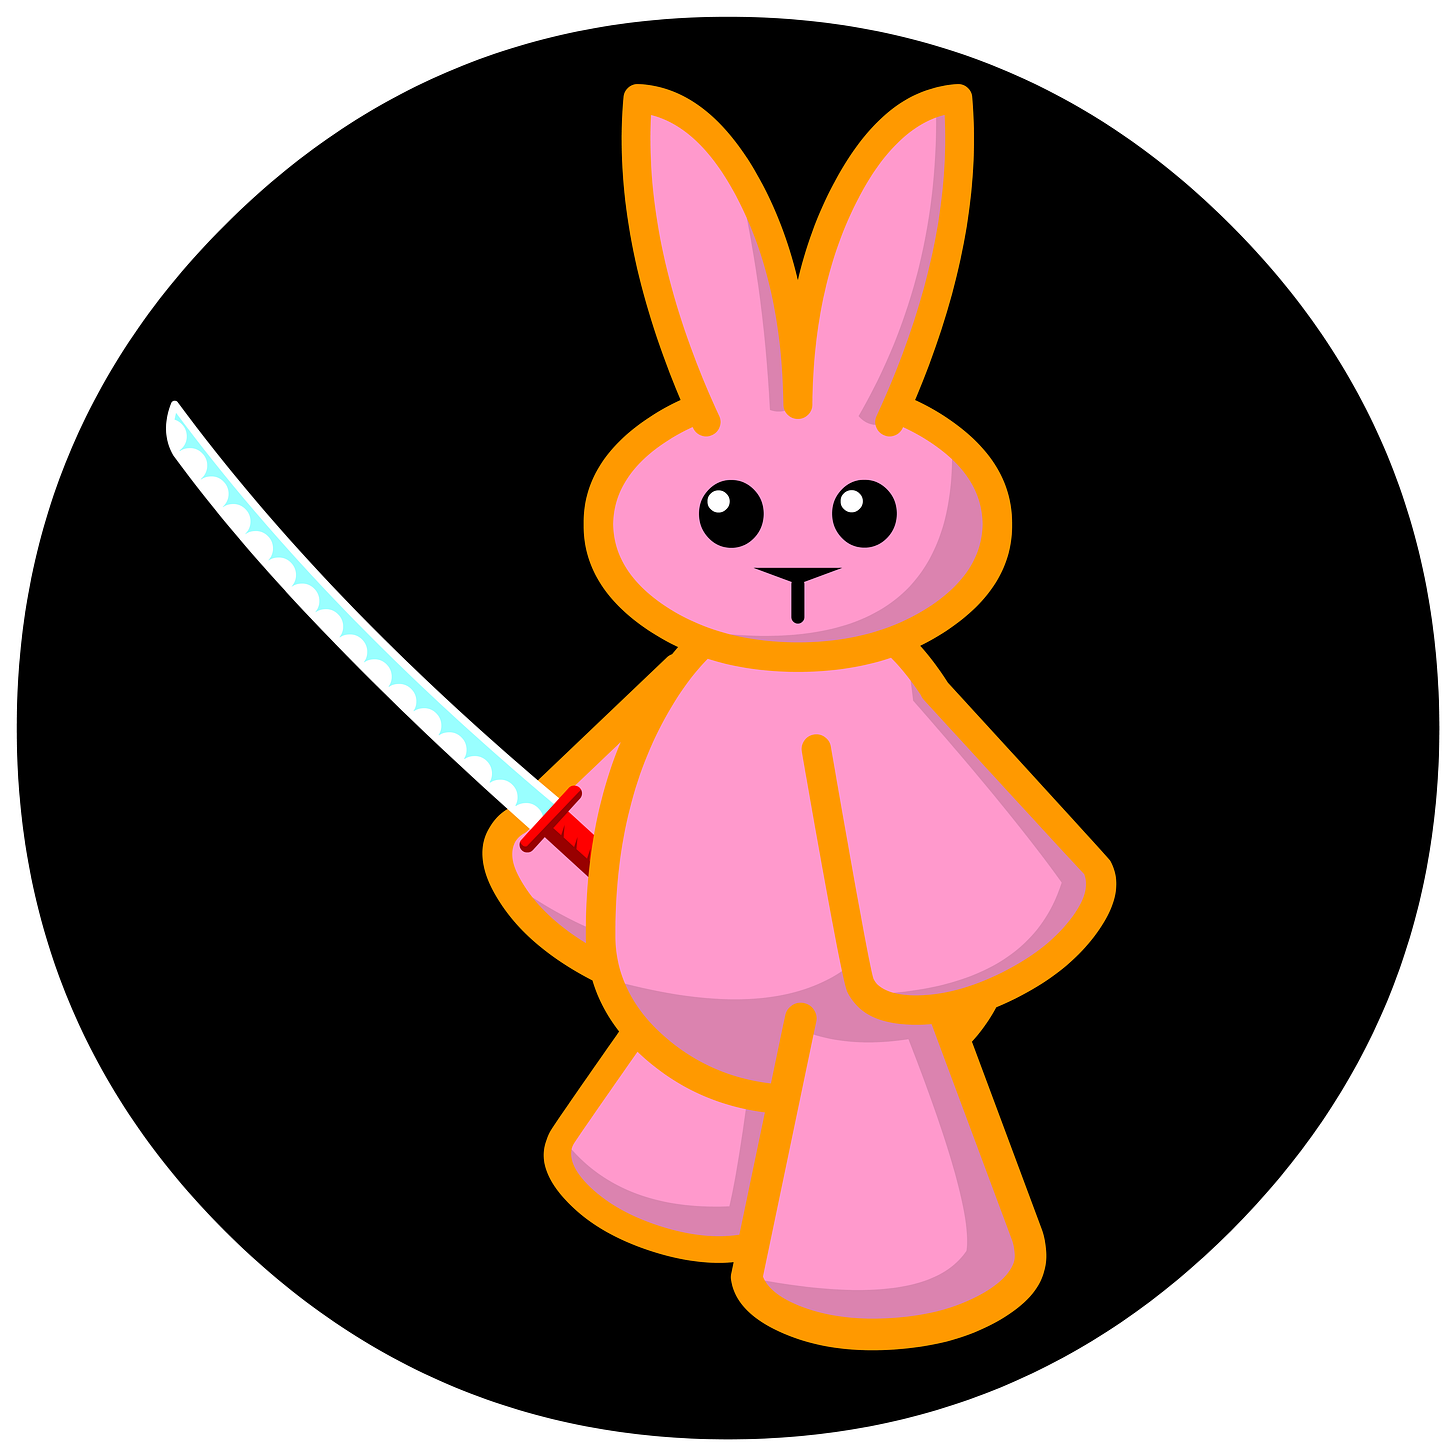 Samurai Lapin, a pink bunny with a sword.